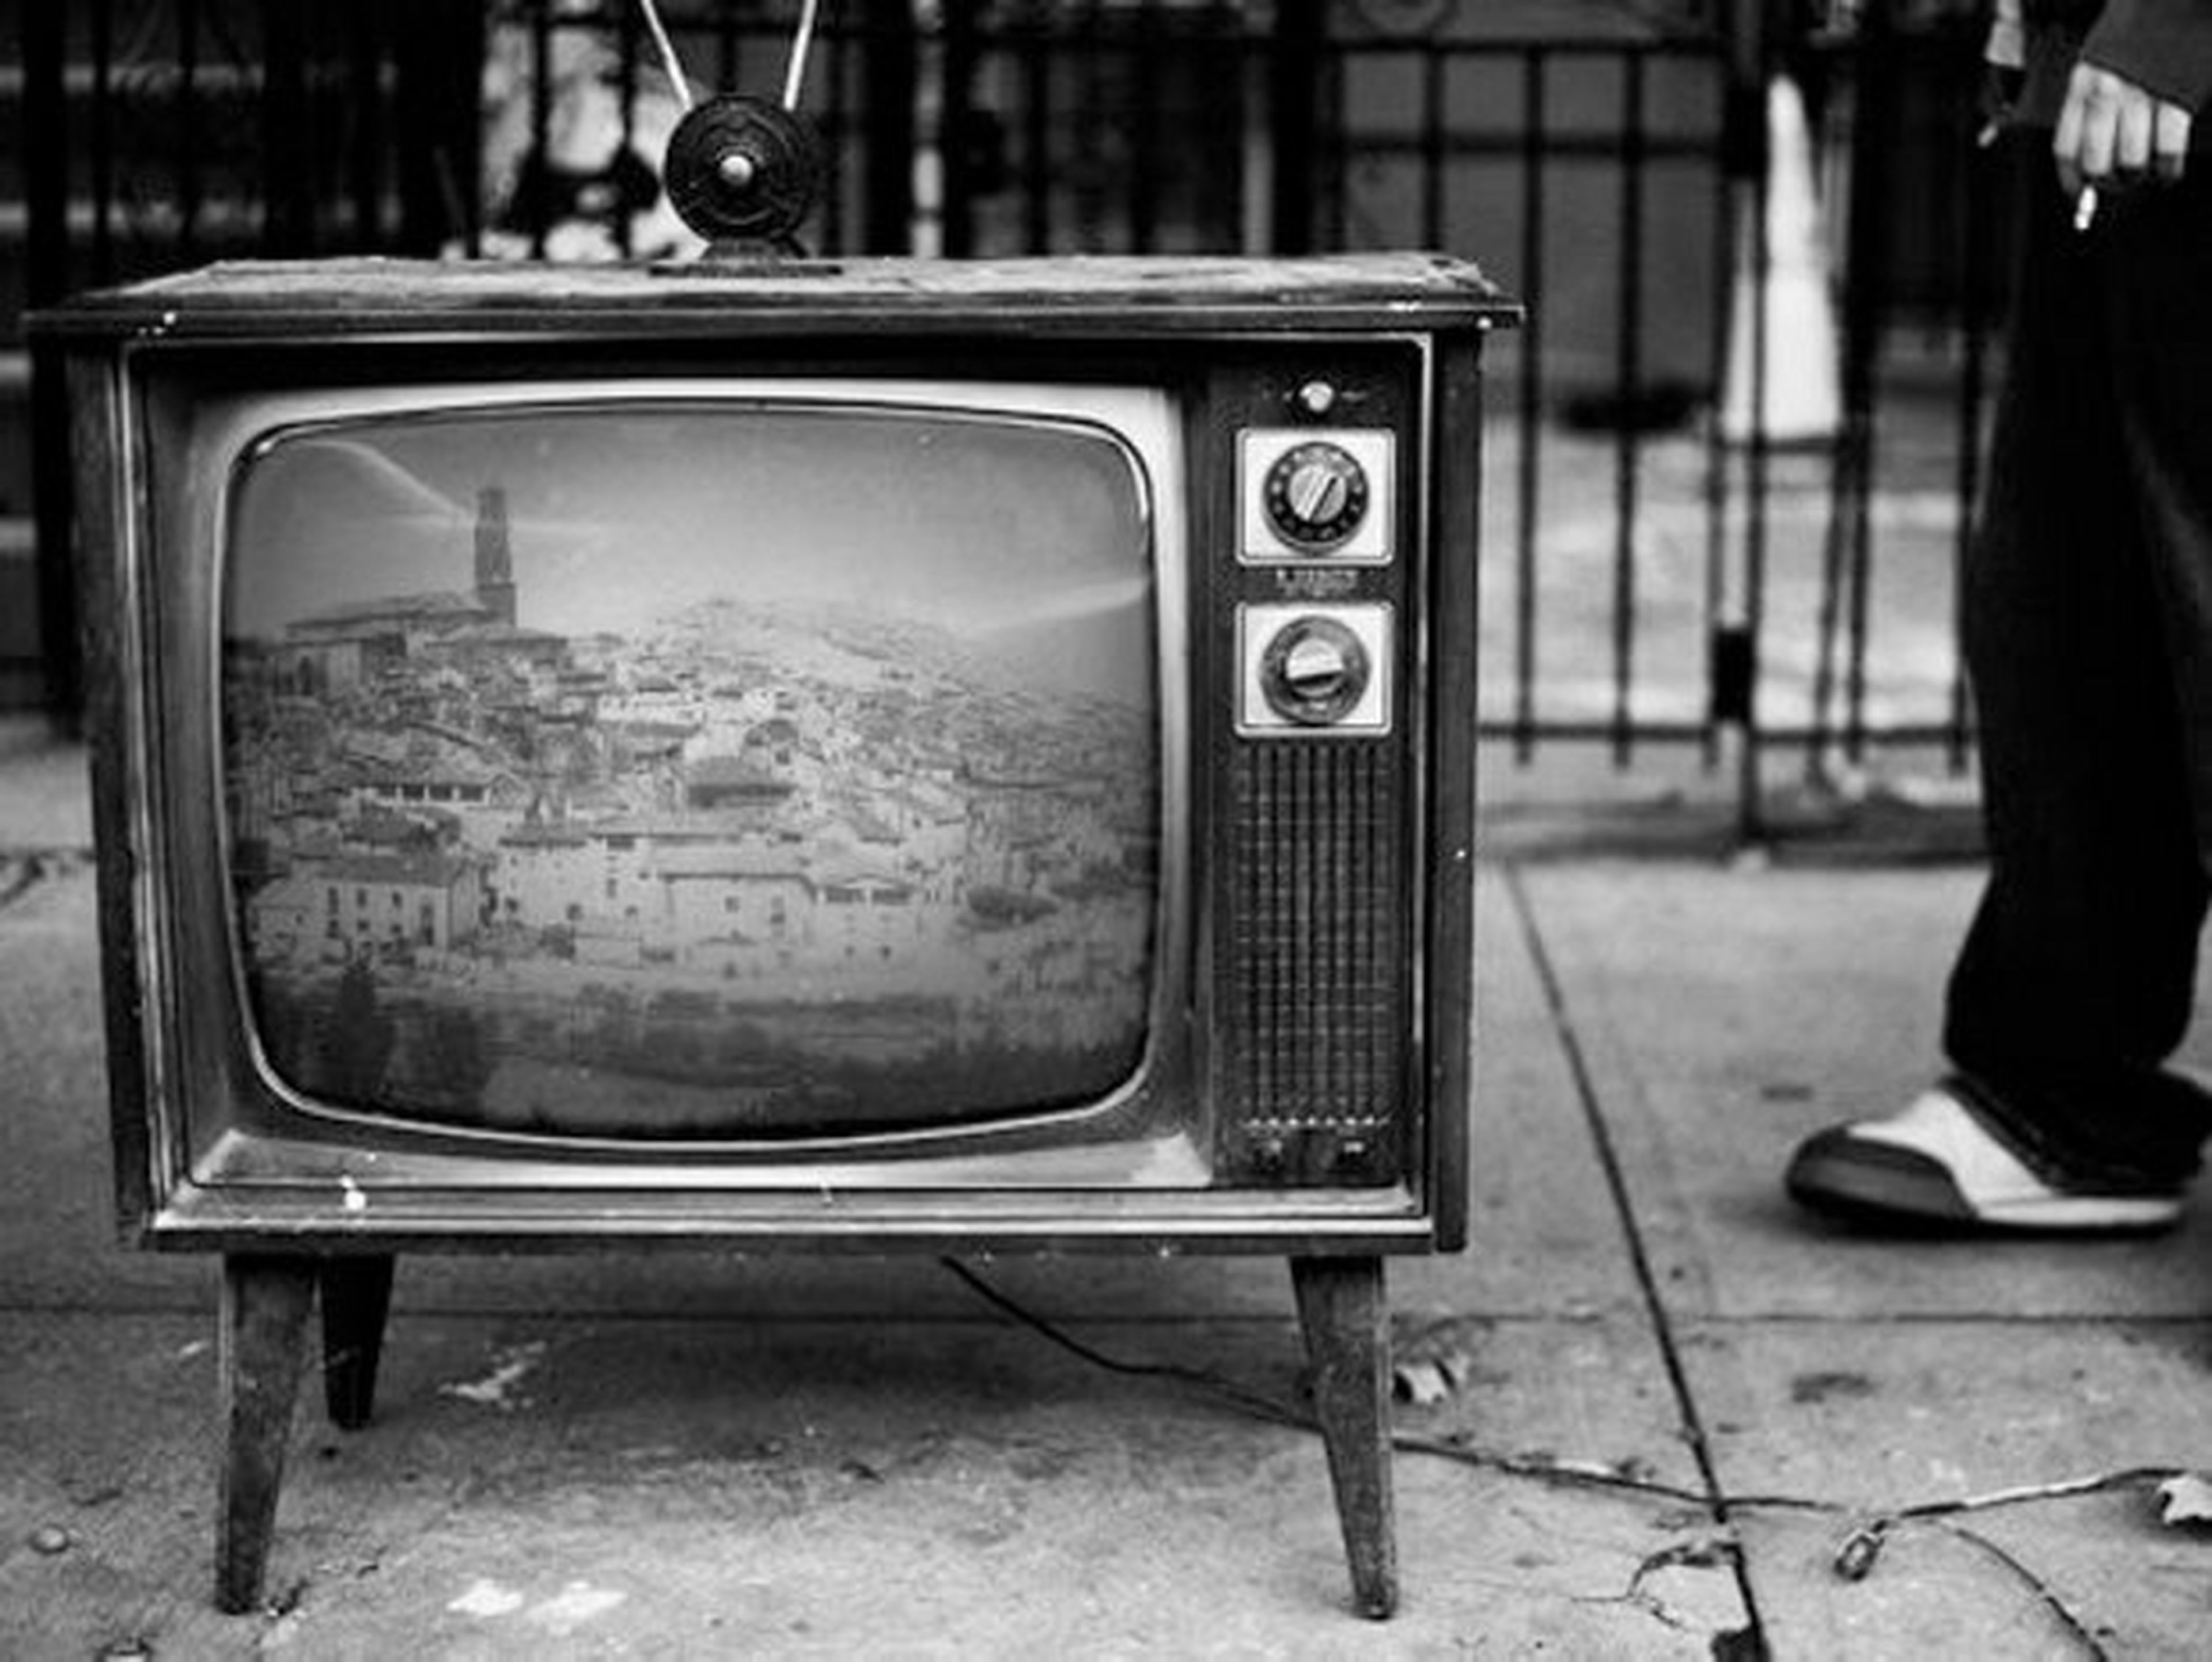 Las mejores ofertas en Televisores antiguos